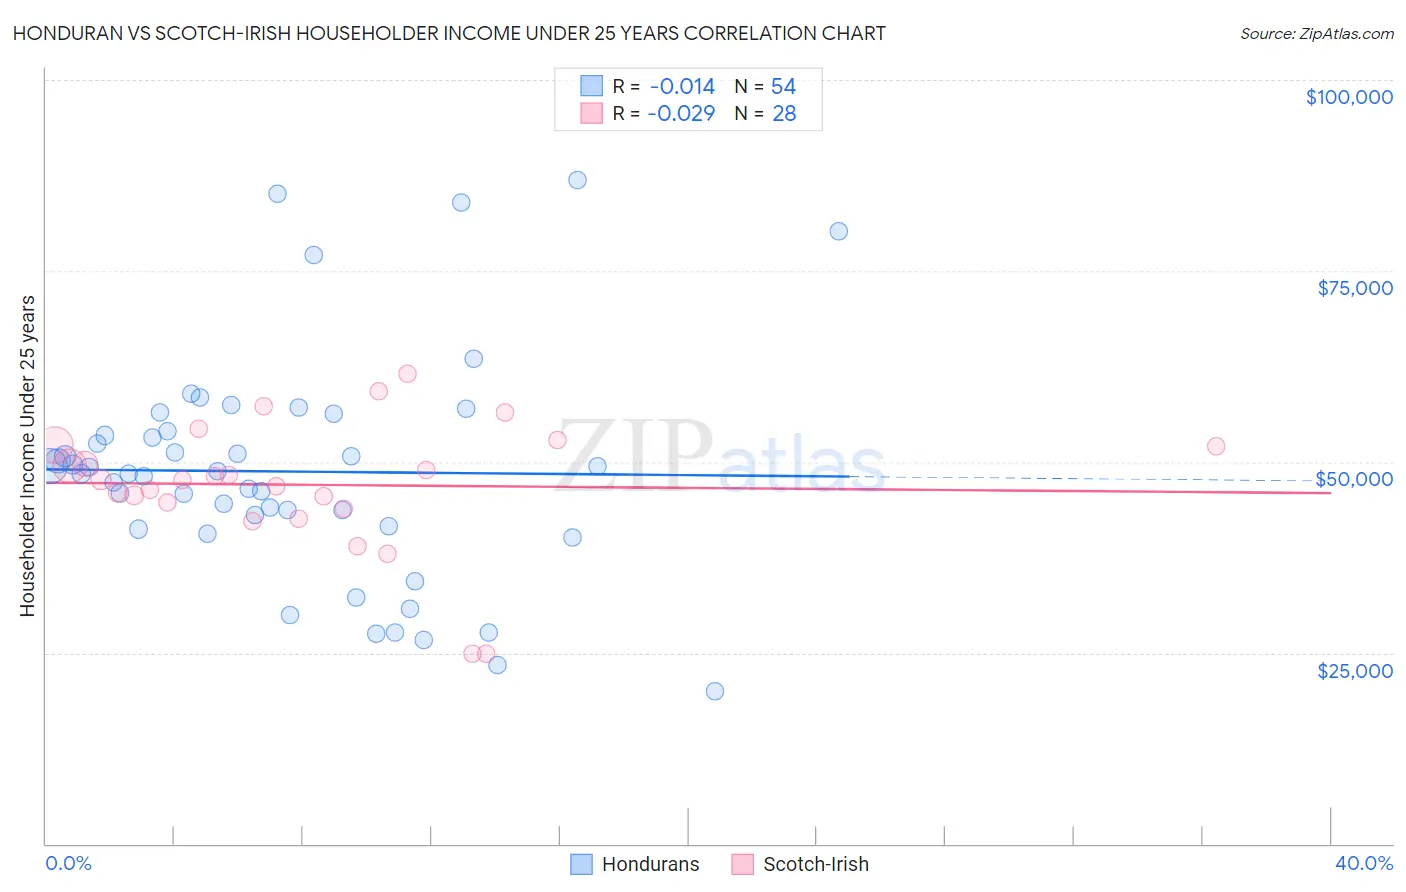 Honduran vs Scotch-Irish Householder Income Under 25 years